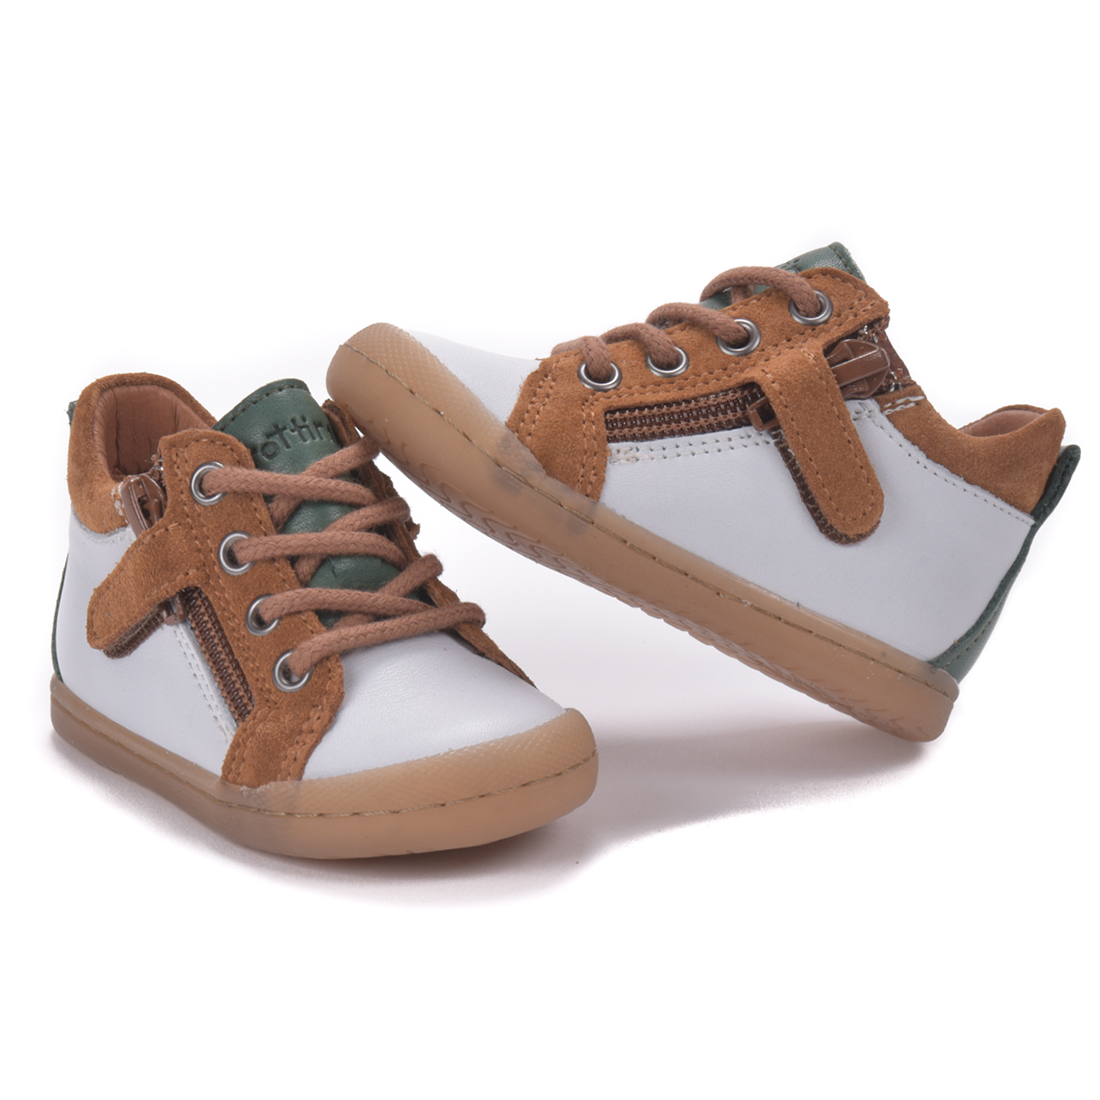 Chaussures bébé premiers pas mixte cuir - Tino blanc et camel - Trottino